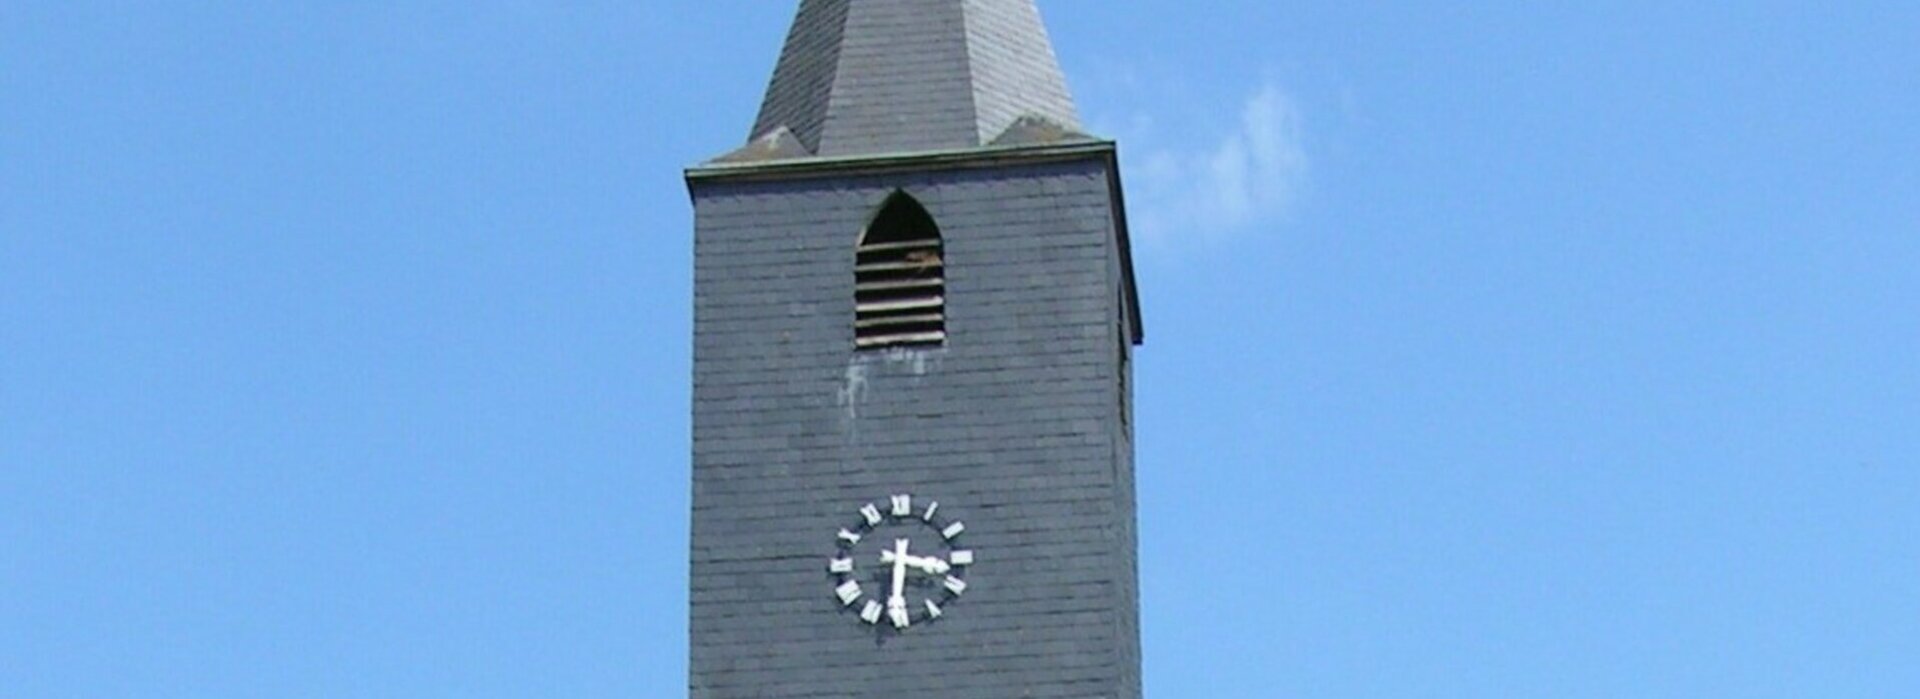 La cloche de L'Eglise